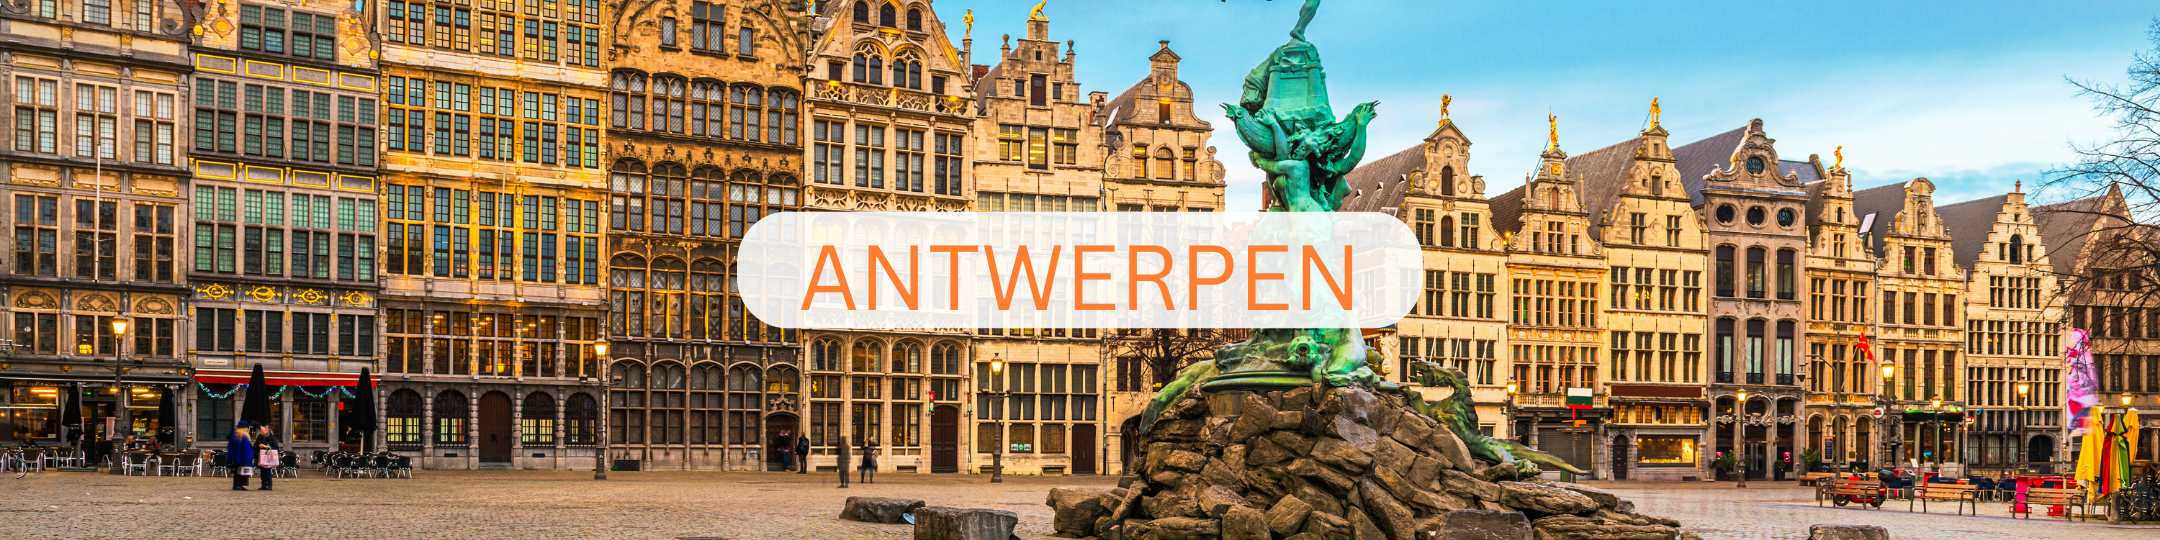 Recruit a Student Antwerpen